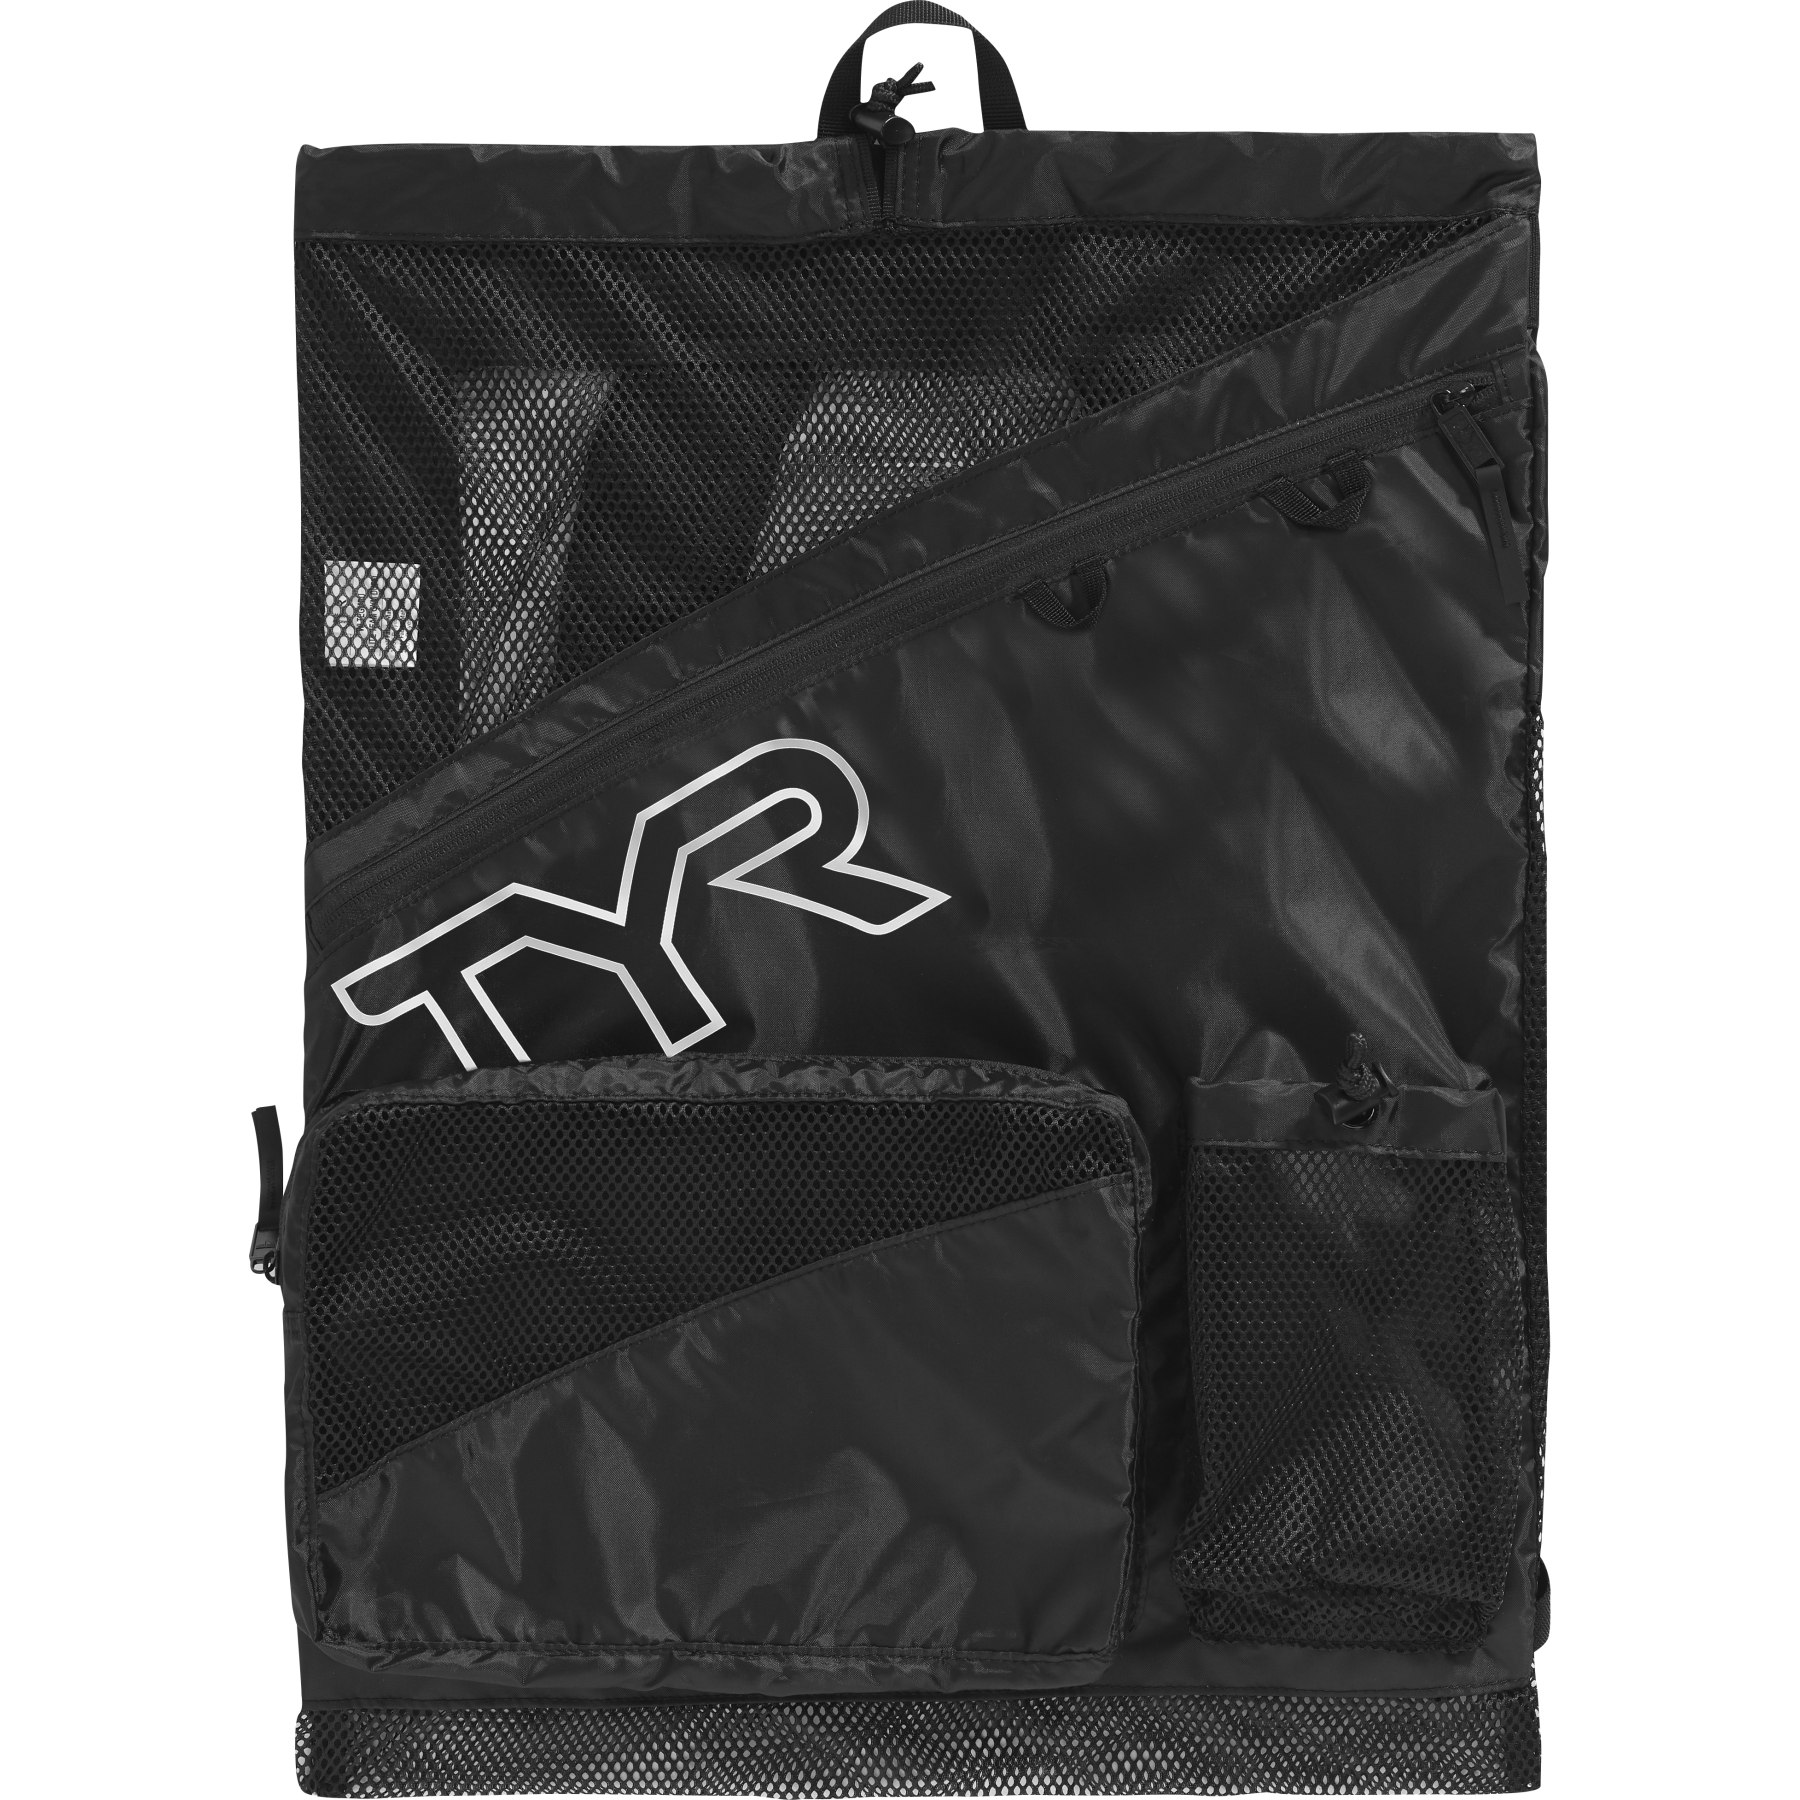 Produktbild von TYR Elite Team Mesh 40L Rucksack - schwarz